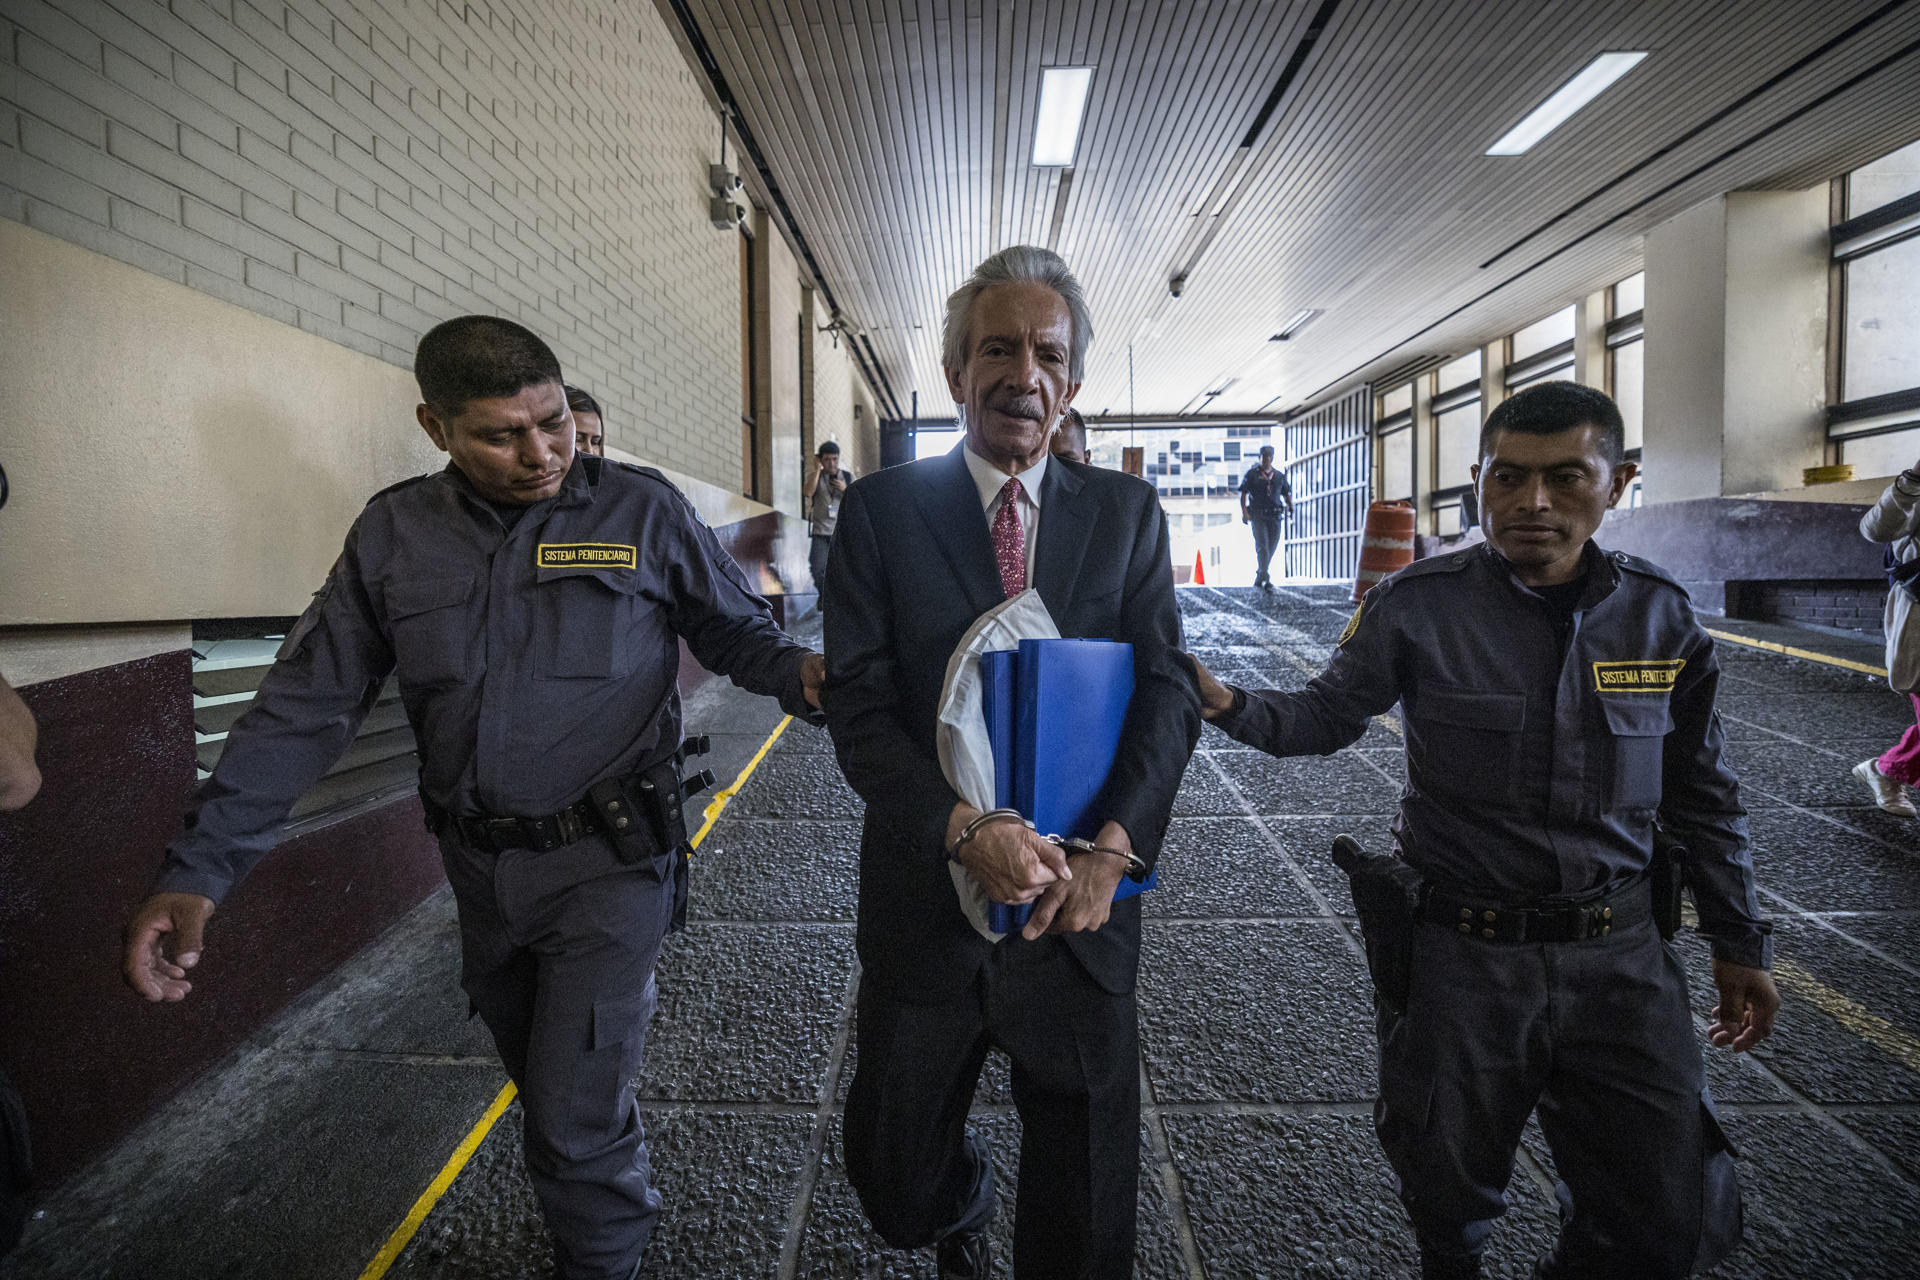 El periodista José Rubén Zamora (c) fue registrado este miércoles, 14 de junio, a su llegada a la Torre de Tribunales, para asistir a la audiencia en la que se espera se conozca la sentencia por su presunta participación un caso de lavado de dinero, chantaje y asociación ilícita, en Ciudad de Guatemala (Guatemala). EFE/Esteban Biba